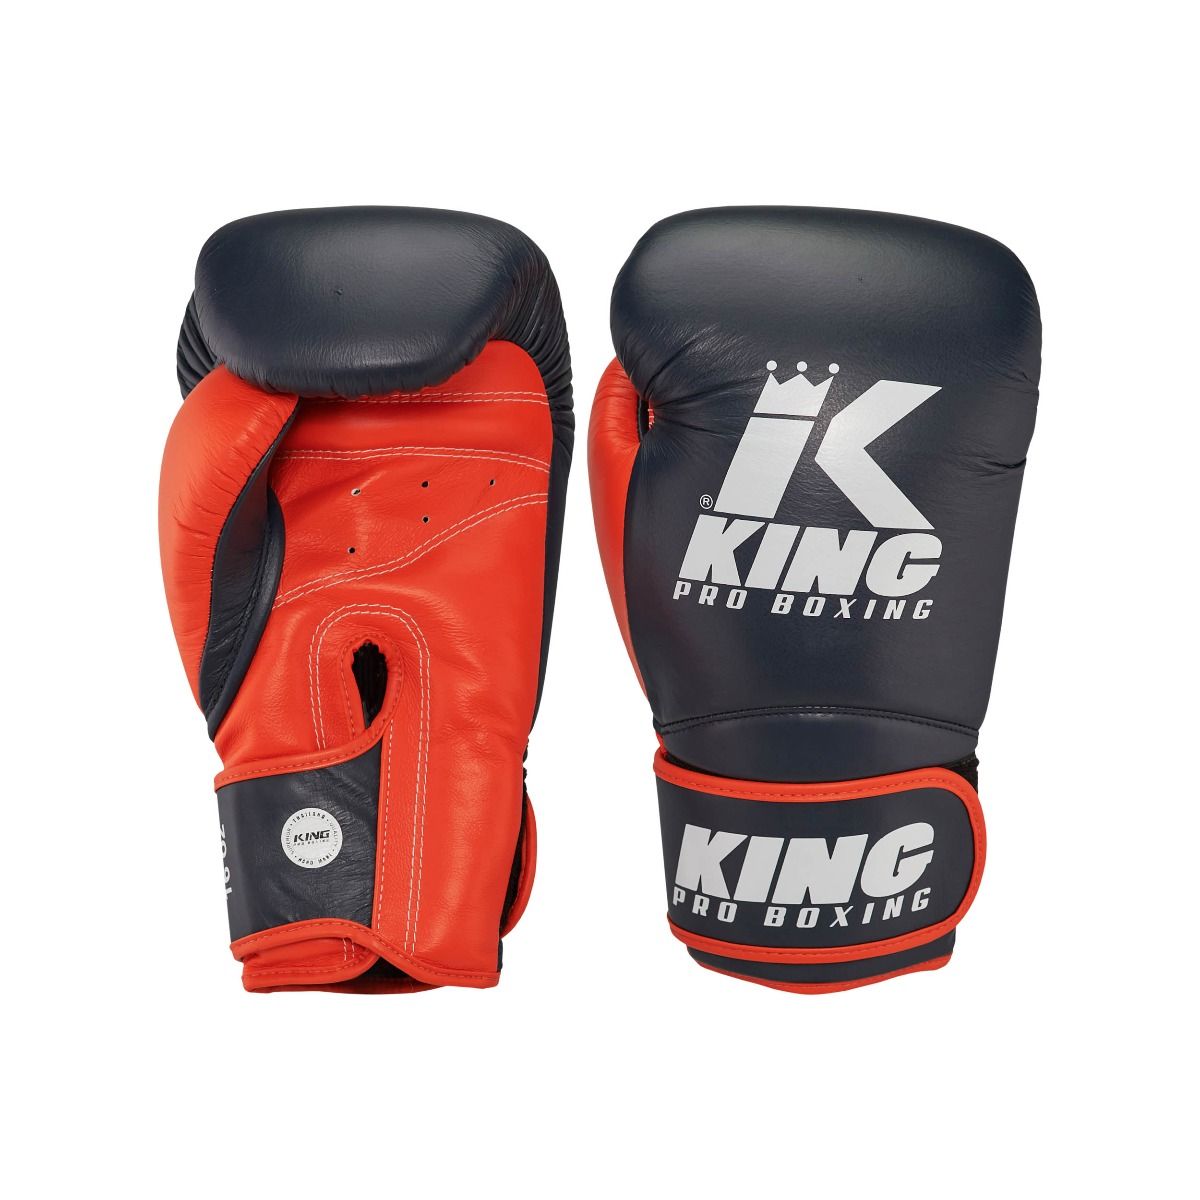 King Pro Boxing KPB/BG Star 15